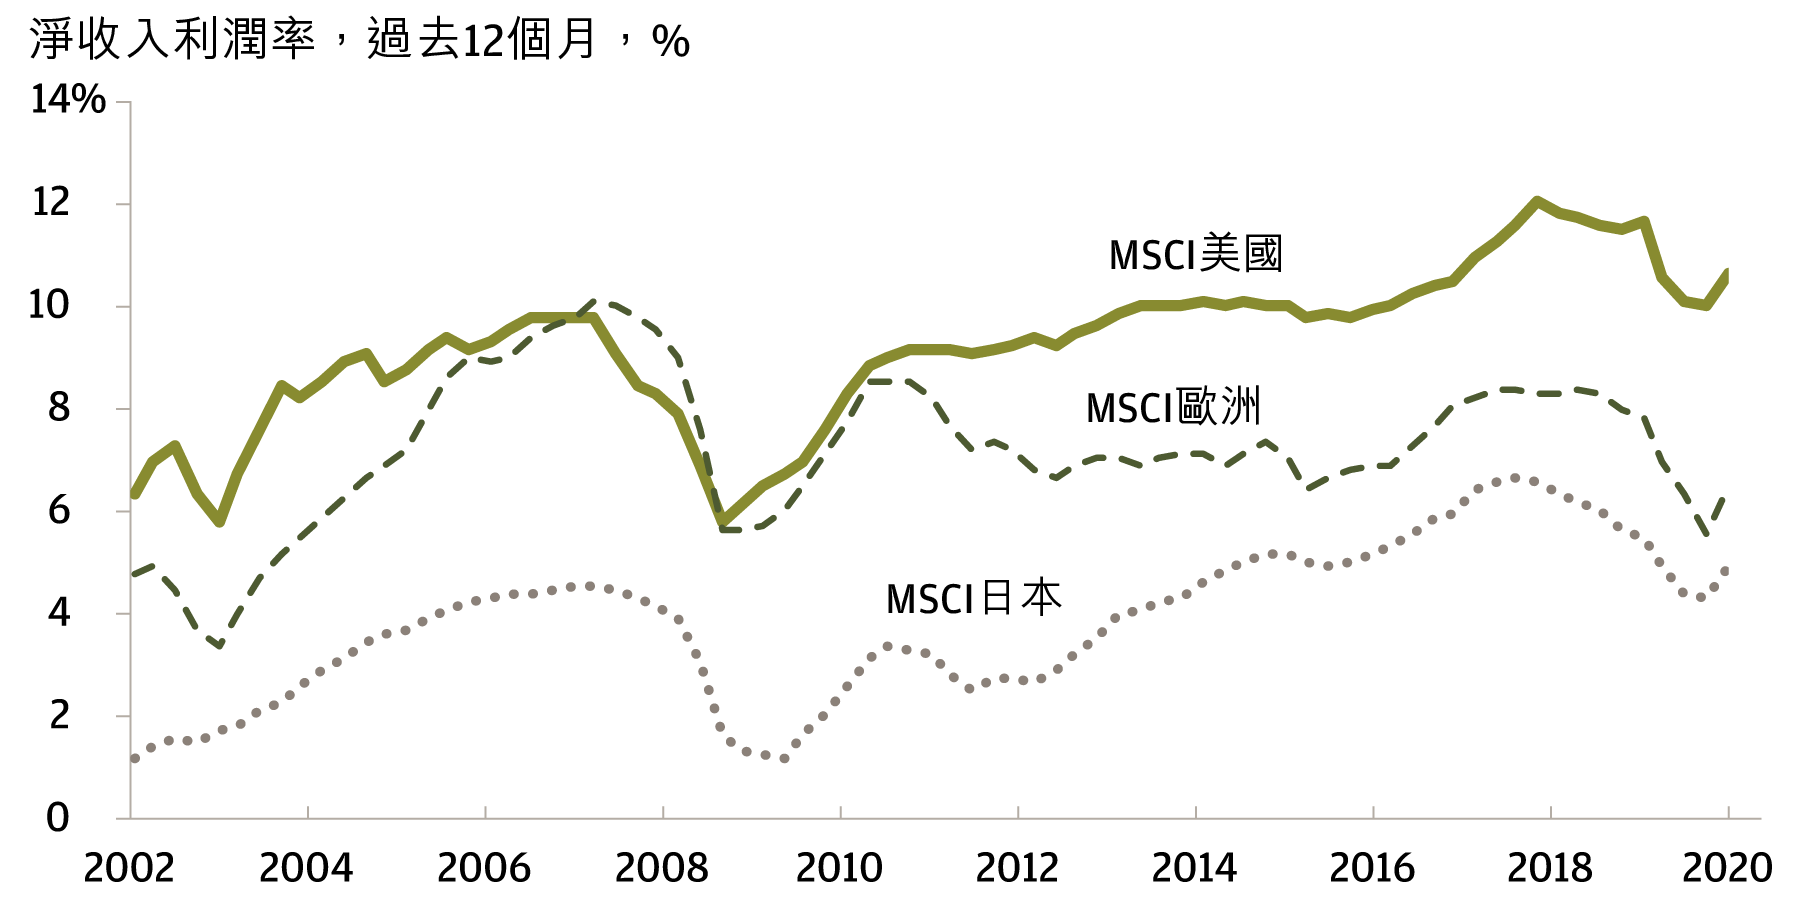 折線圖顯示了2002年至2021年美國、歐洲和日本各國MSCI指數的淨收入利潤率。資料來源：MSCI和Factset，數據截至2021年第一季度。2002年，美國MSCI淨收入利潤率約為6%，歐洲約為5%，日本約為1%。2021年第一季度，美國MSCI淨收入利潤率約為11%，歐洲約為6%，日本約為5%。